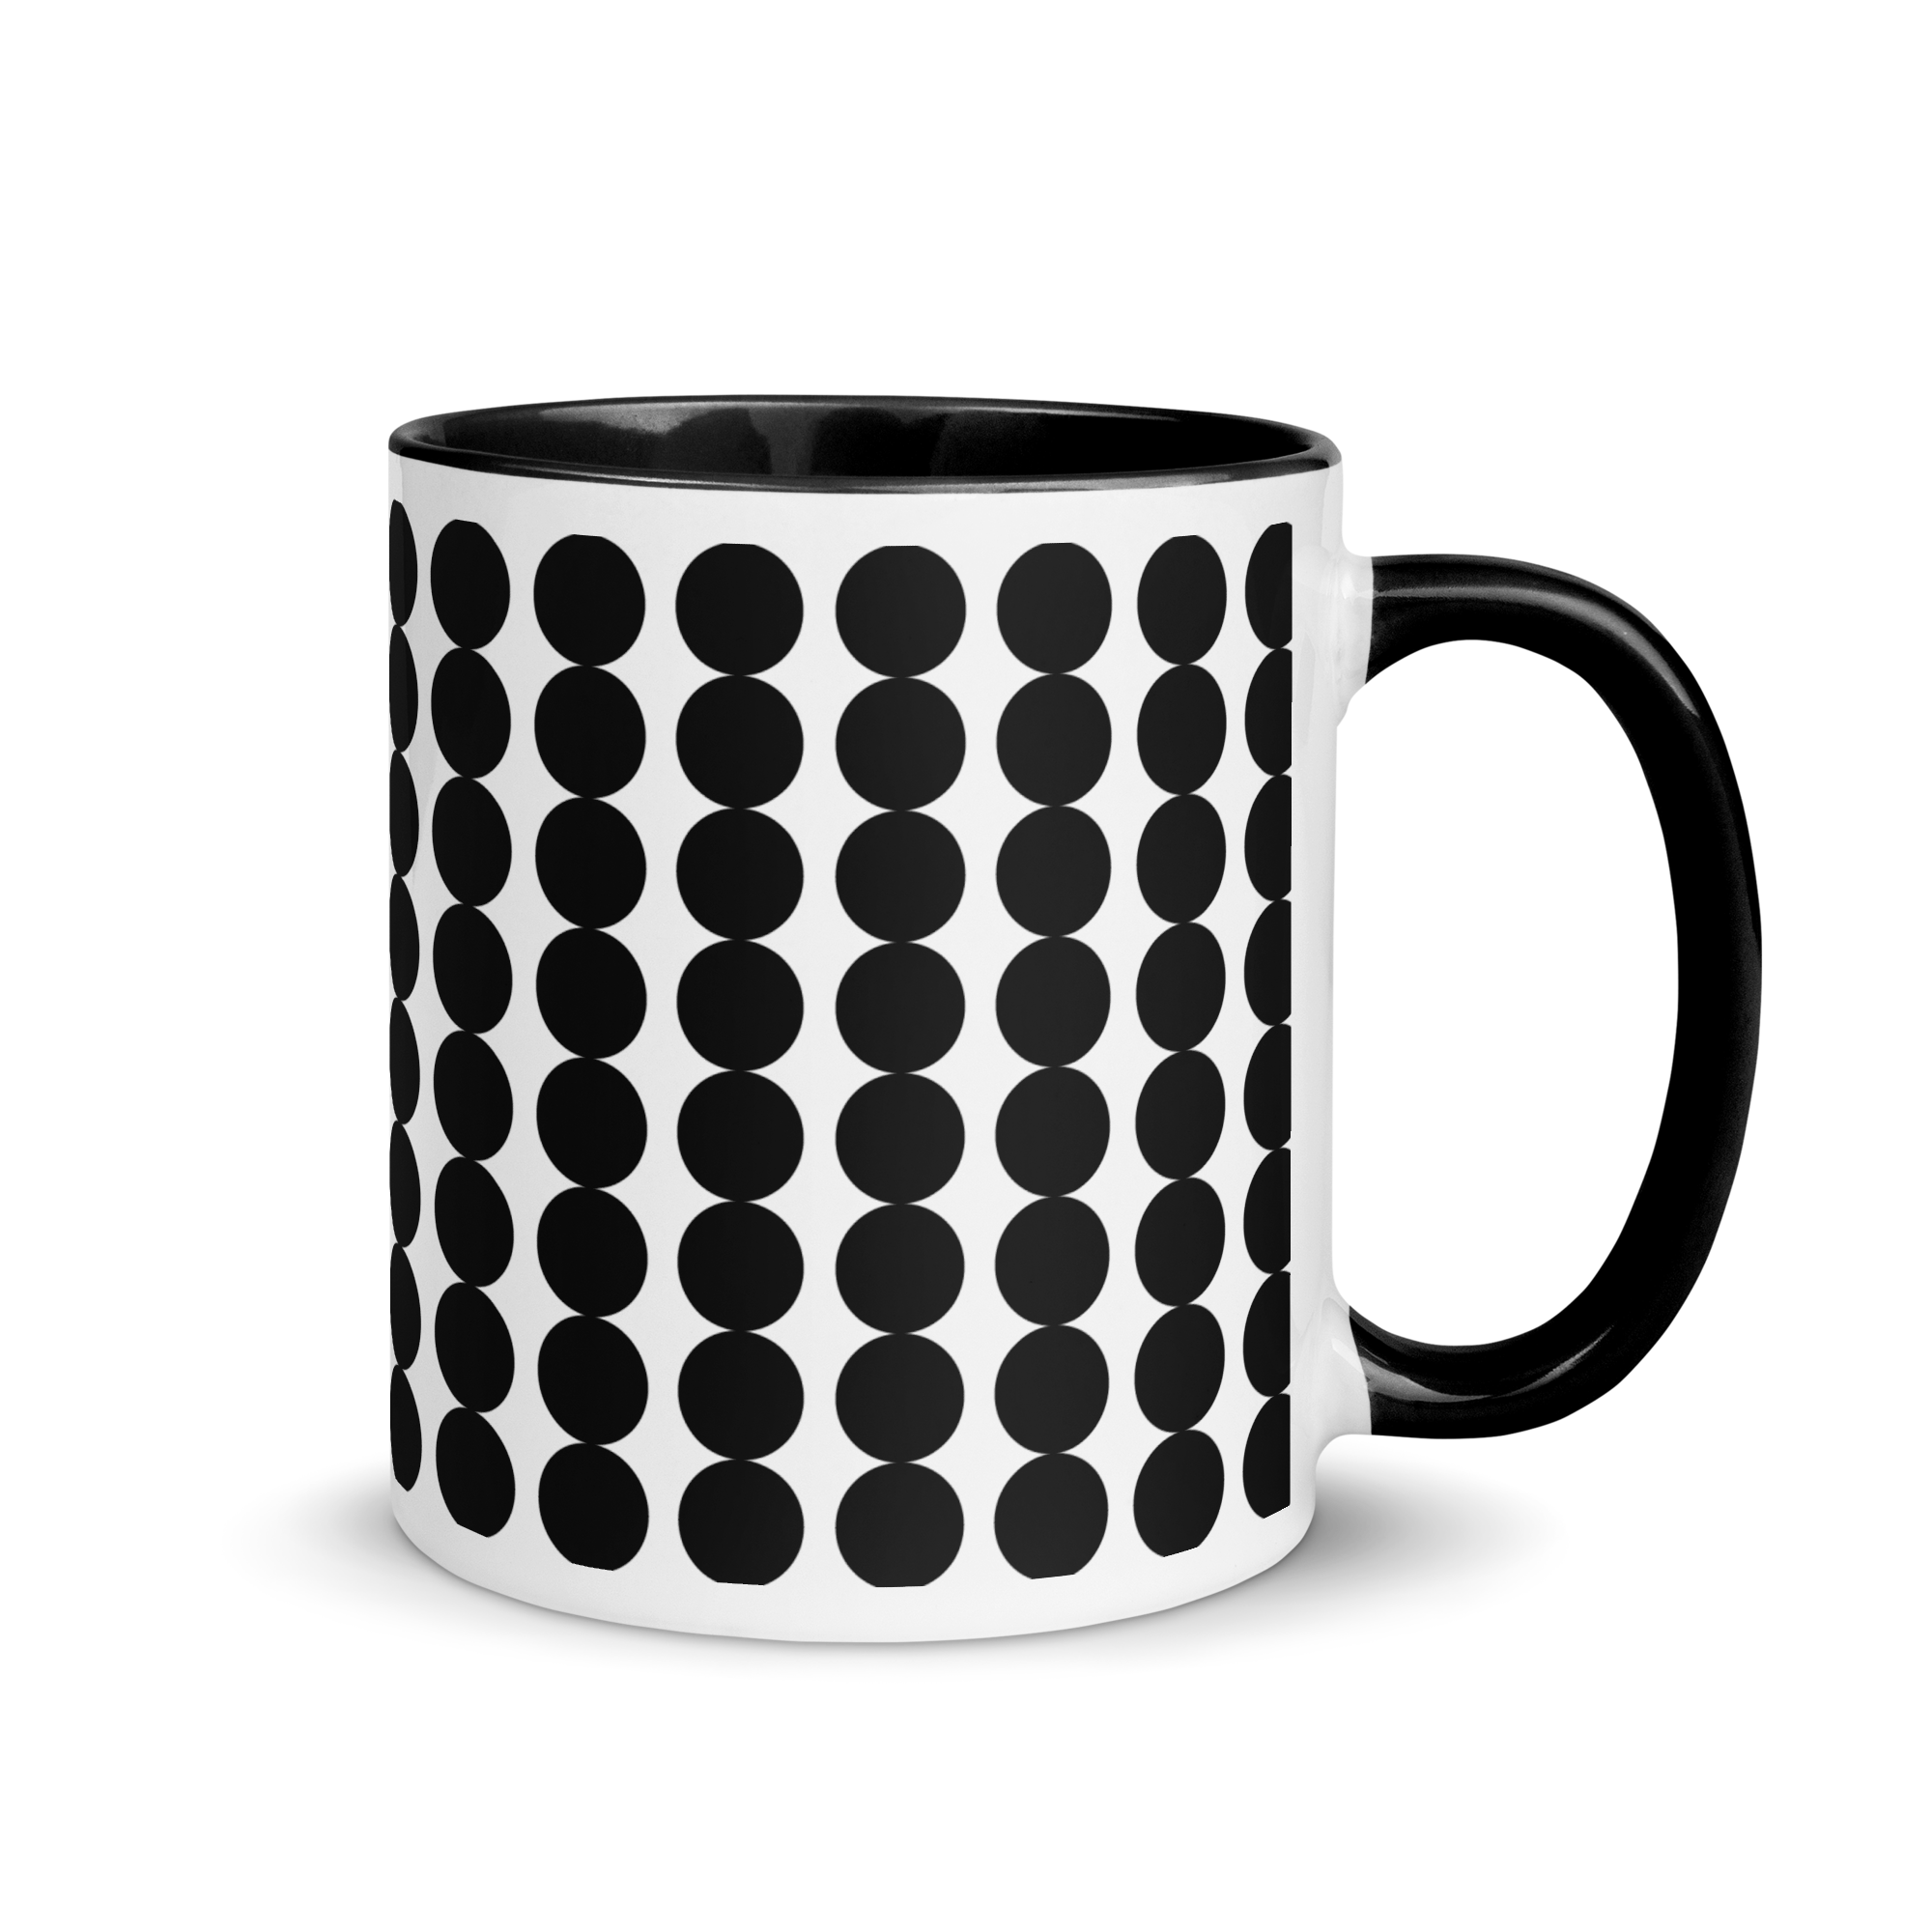 white-ceramic-mug-with-color-inside-black-11-oz-right-65e47152a9cc6.png